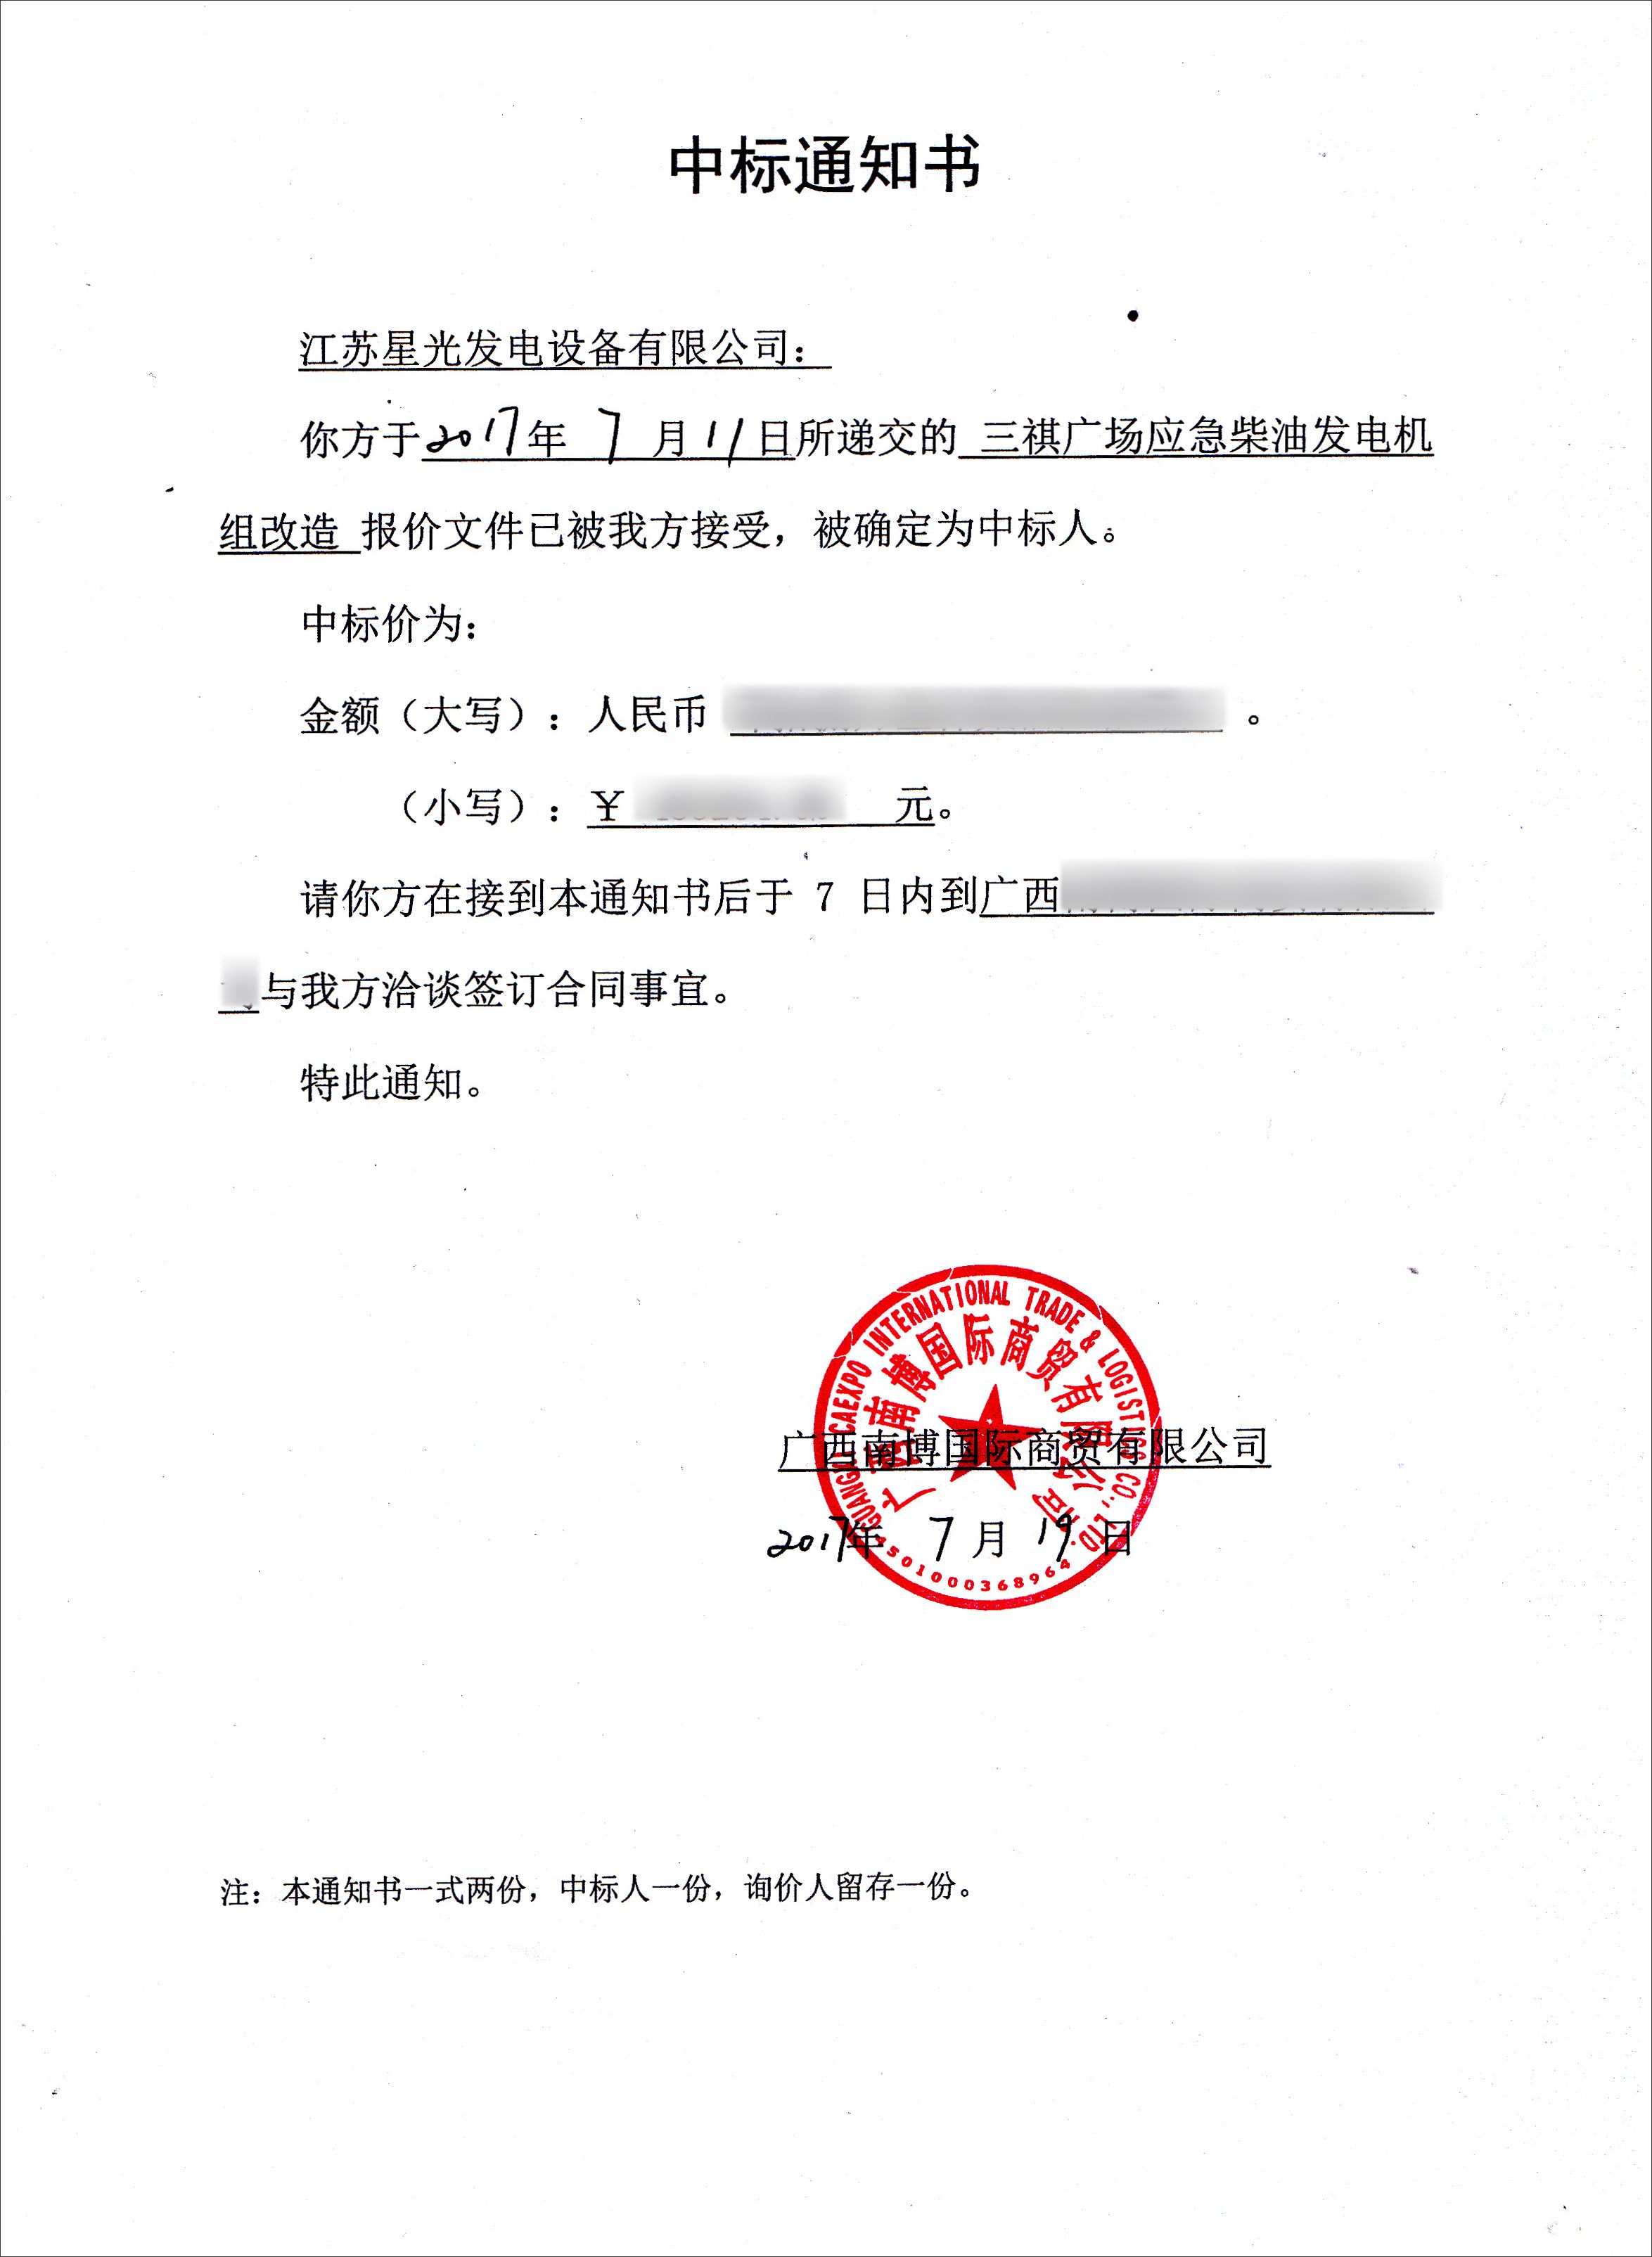 三祺广场应急柴油发电机组改造项目中标通知书